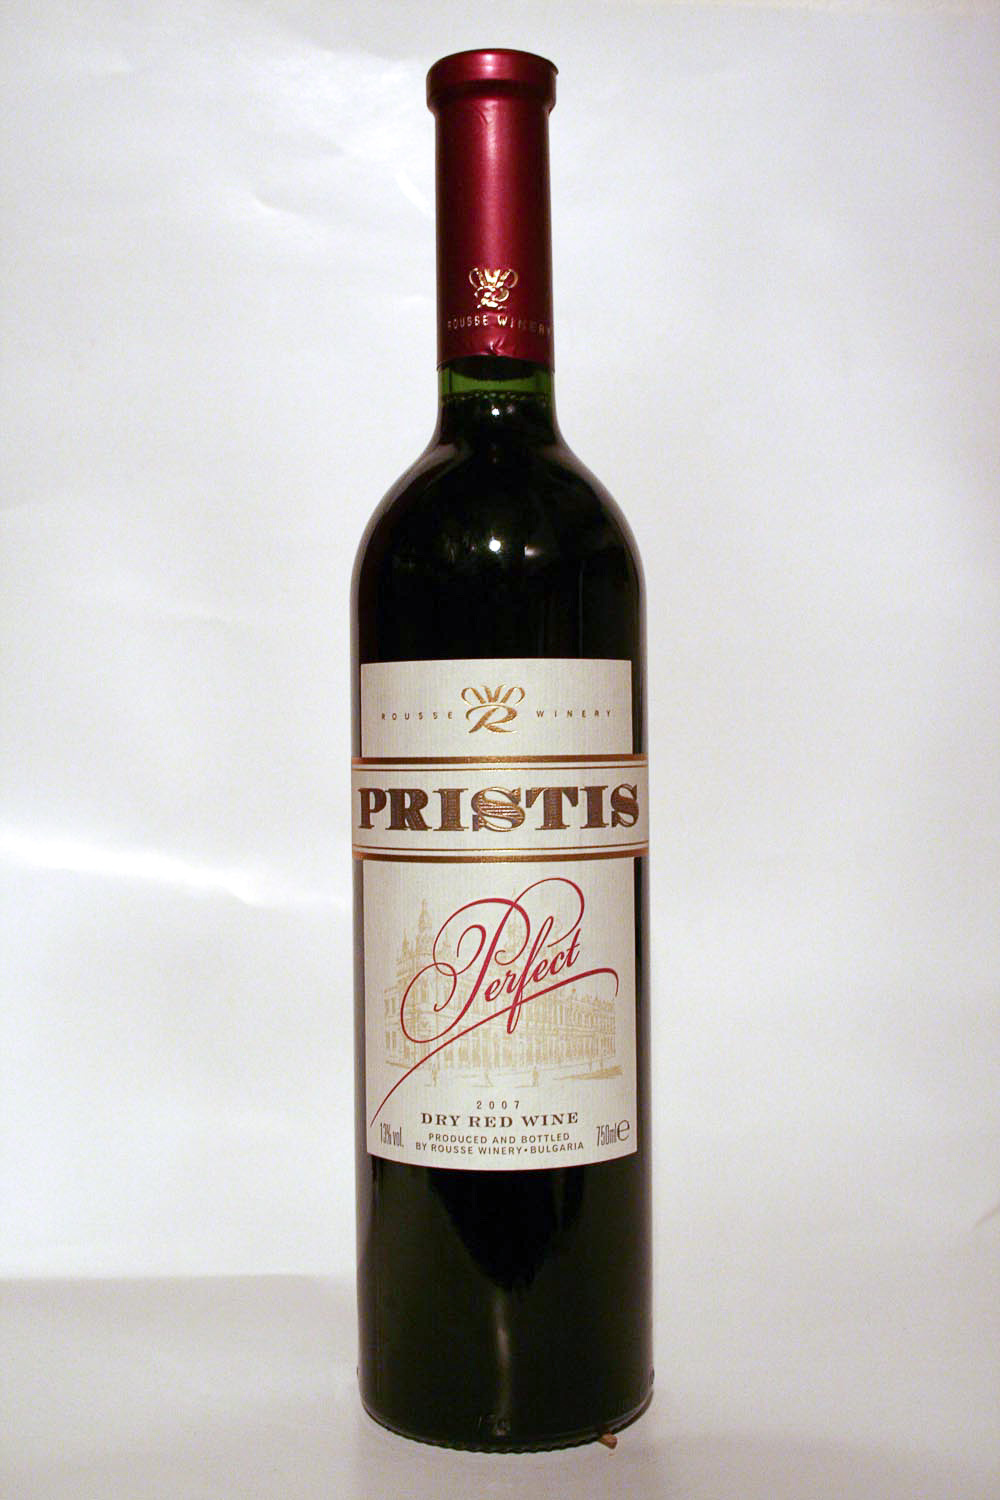 Pristis Perfect 2007